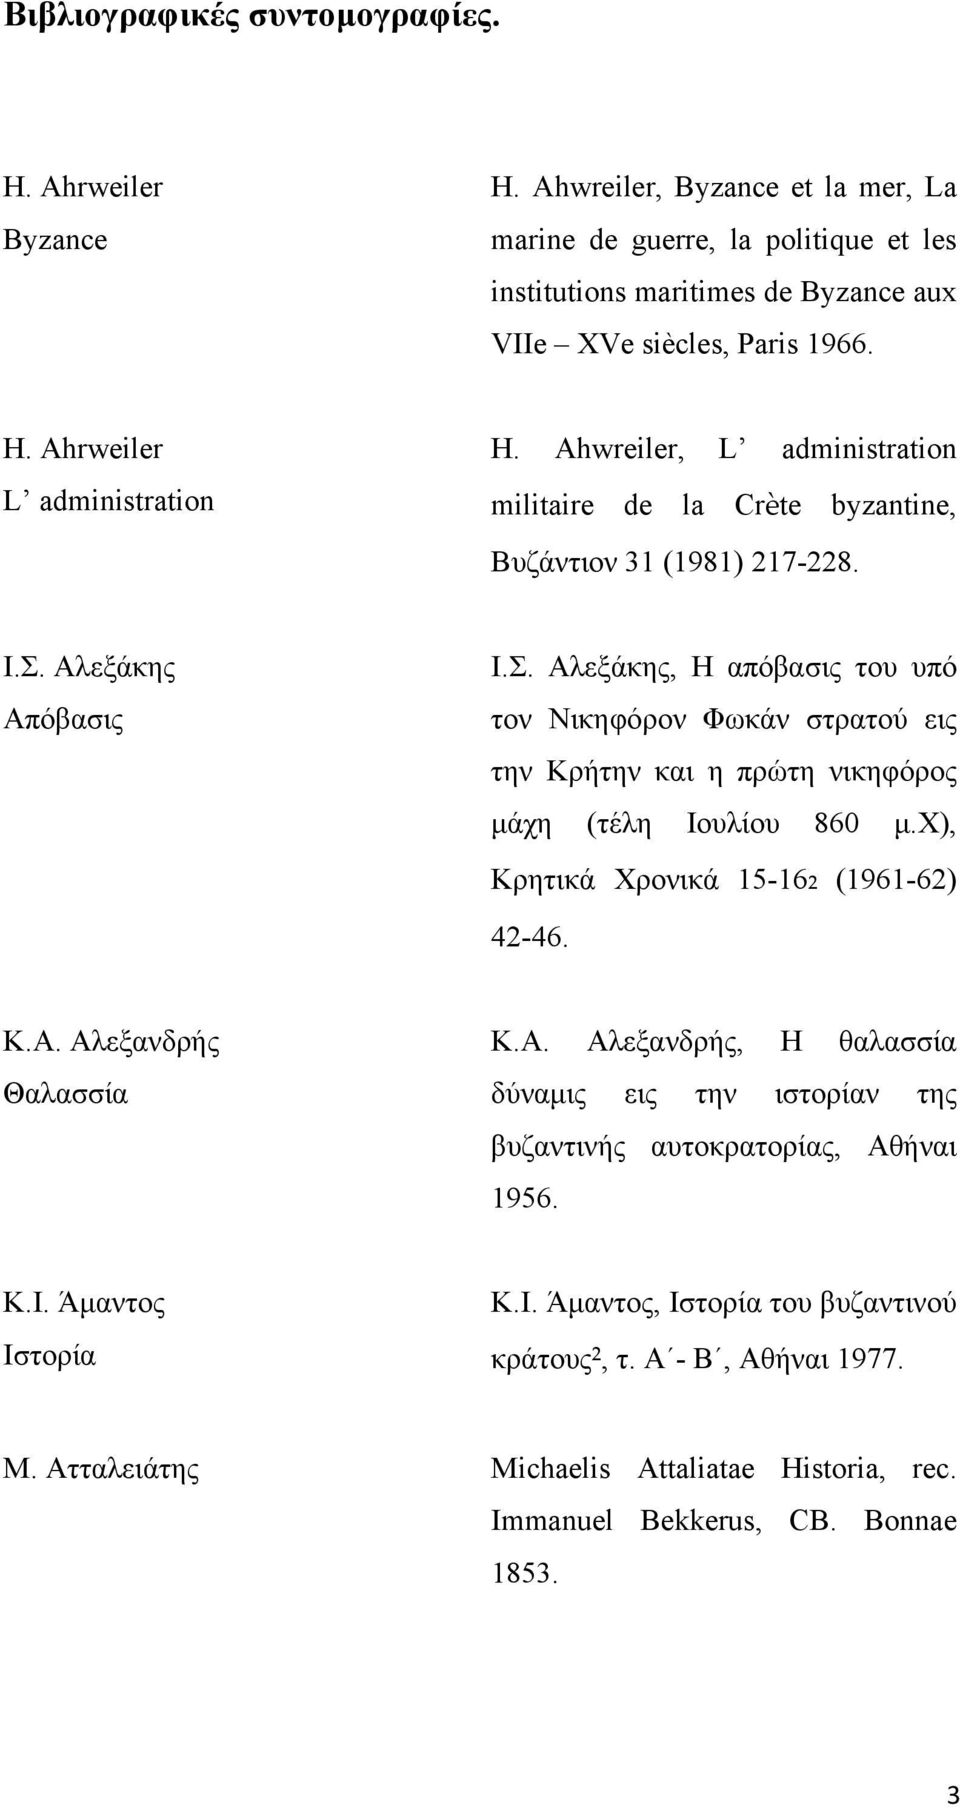 Αλεξάκης Απόβασις Ι.Σ. Αλεξάκης, Η απόβασις του υπό τον Νικηφόρον Φωκάν στρατού εις την Κρήτην και η πρώτη νικηφόρος μάχη (τέλη Ιουλίου 860 μ.χ), Κρητικά Χρονικά 15-16₂ (1961-62) 42-46. Κ.Α. Αλεξανδρής Θαλασσία Κ.